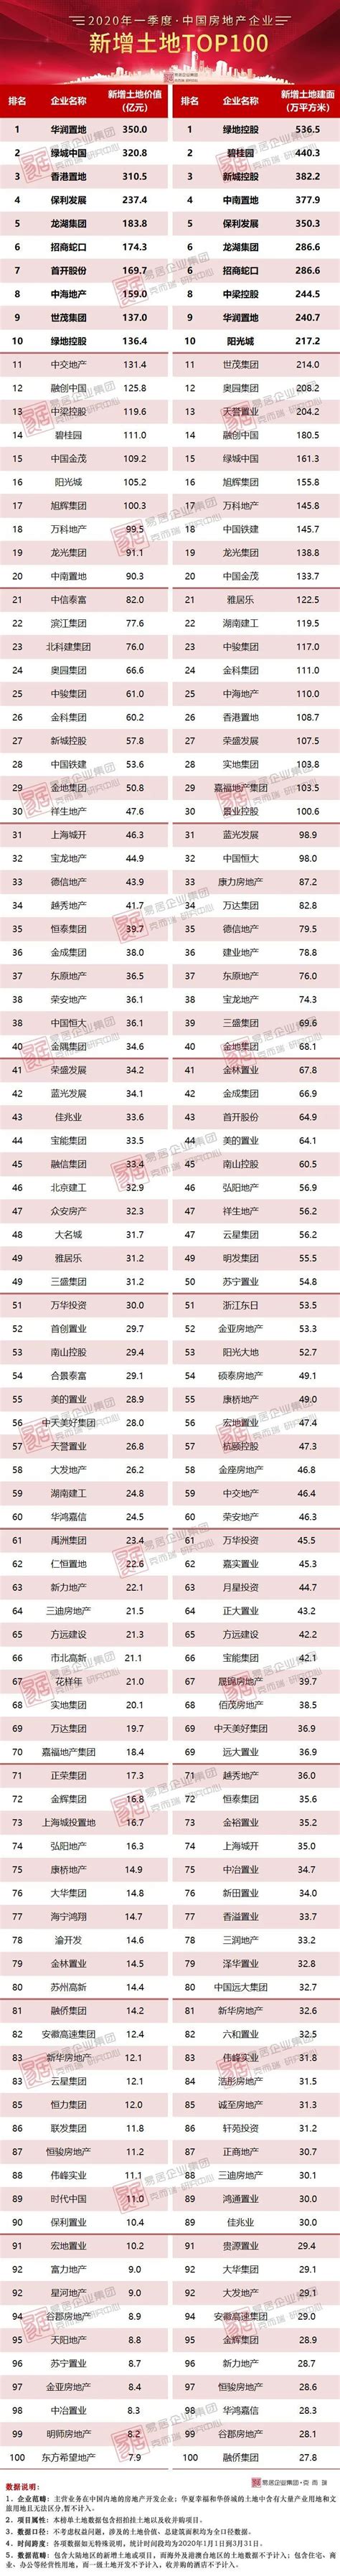 2020中国民企排行_2020年一季度中国房地产企业新增货值TOP100排行 ...